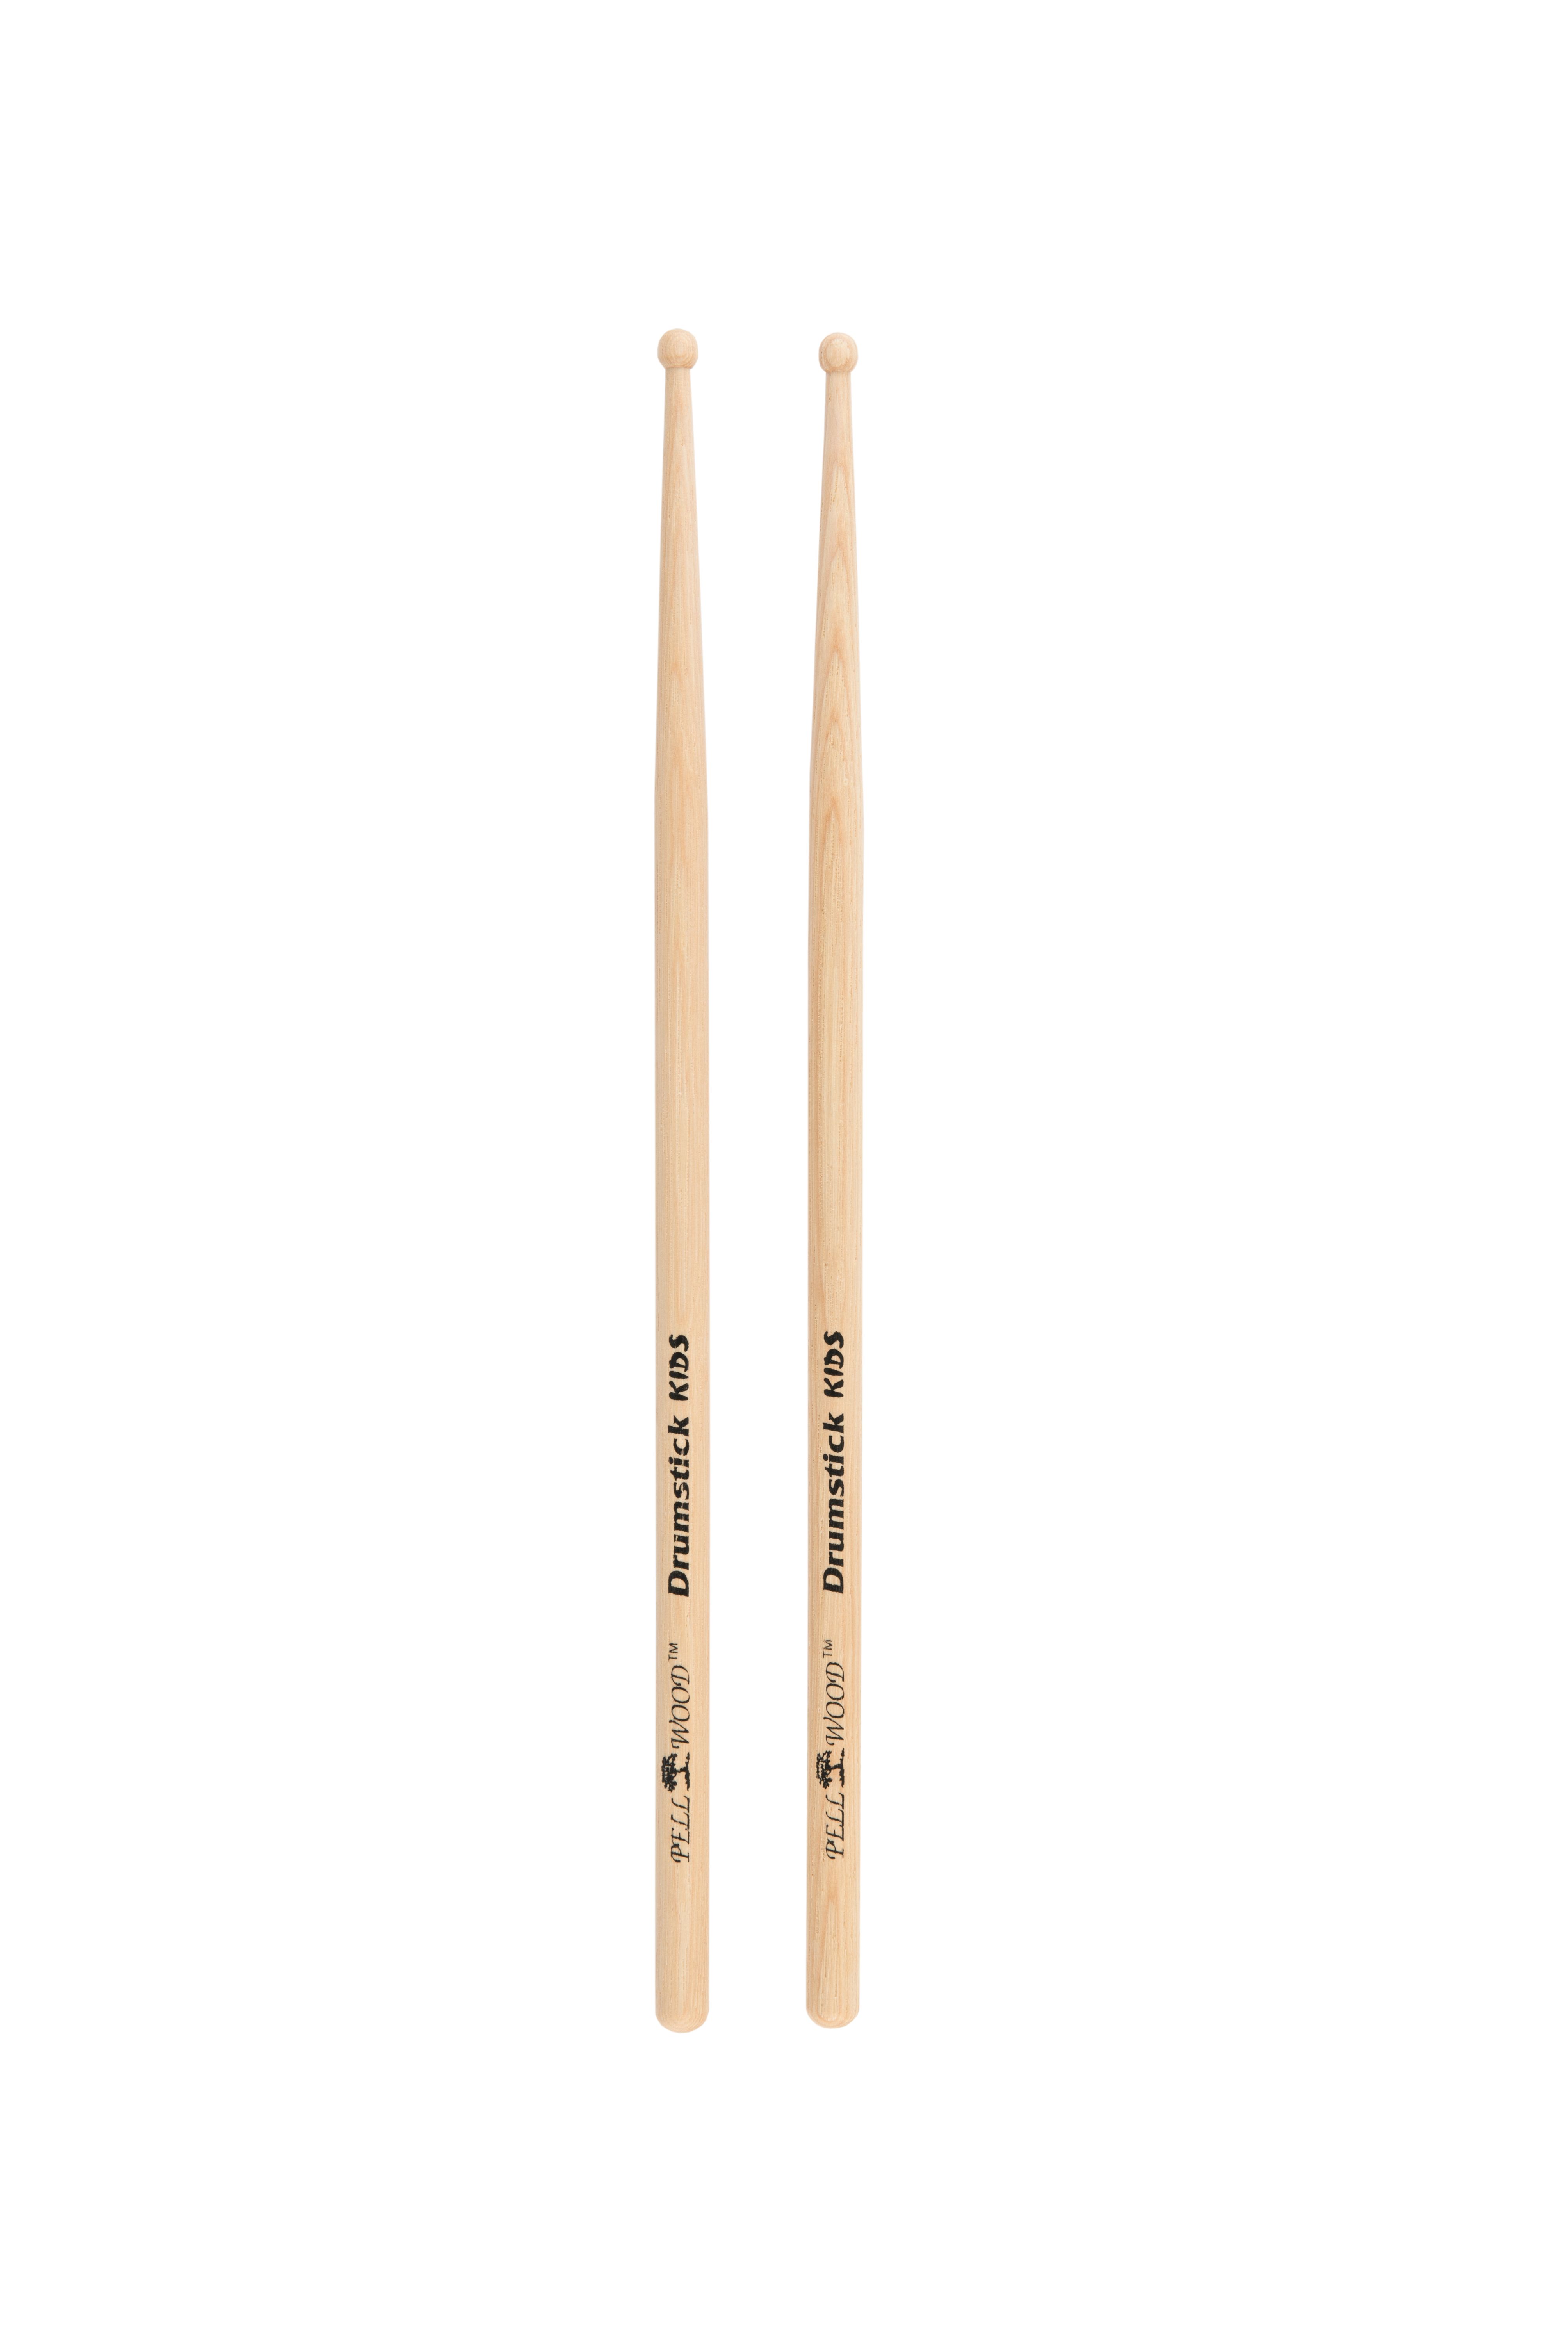 Drumstick for Kids X-line 4 páry